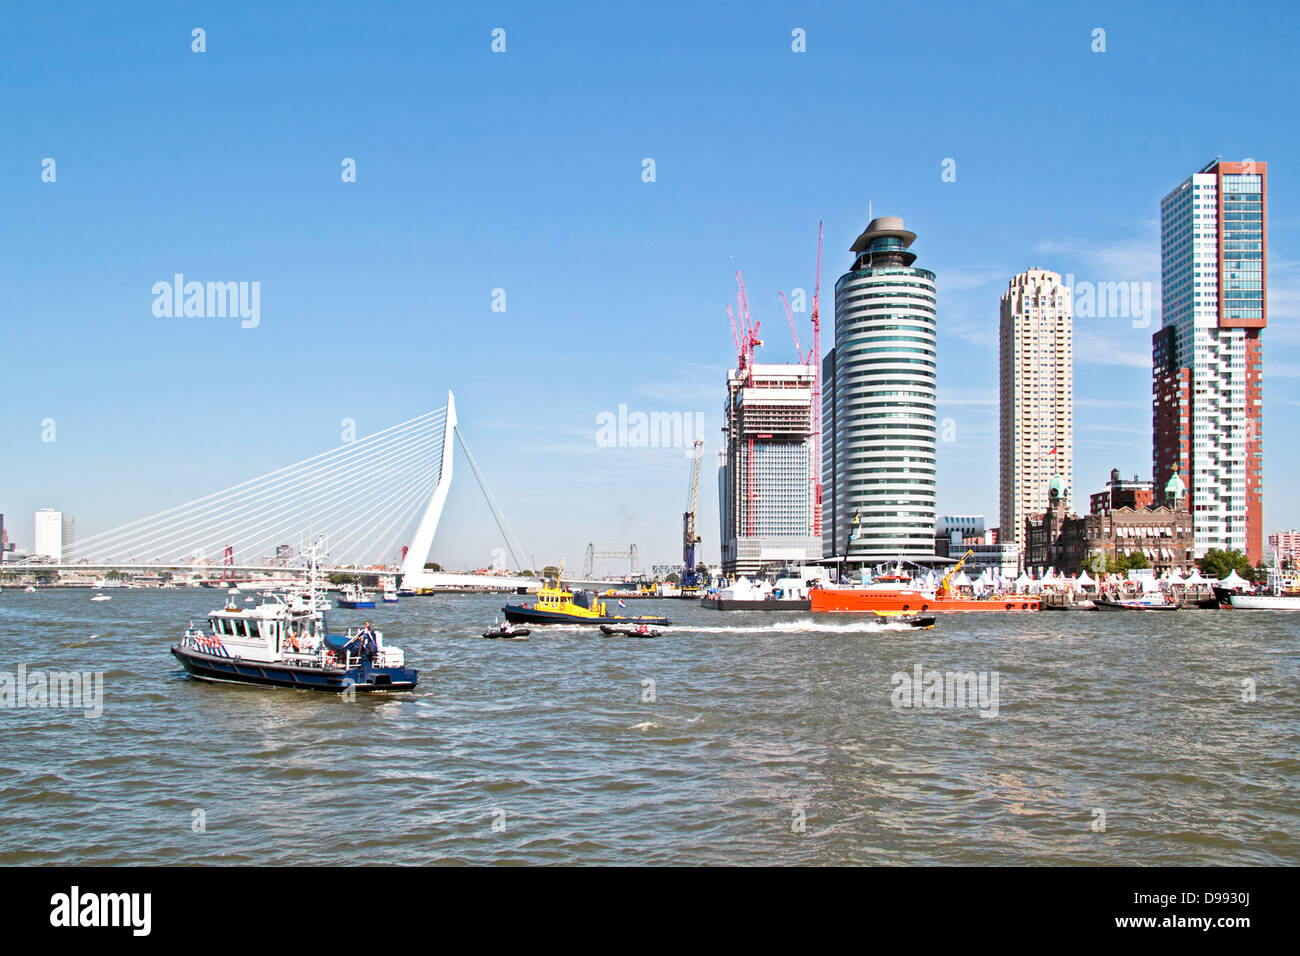 El puerto de Rotterdam, en los Países Bajos con el puente Erasmus Foto de stock